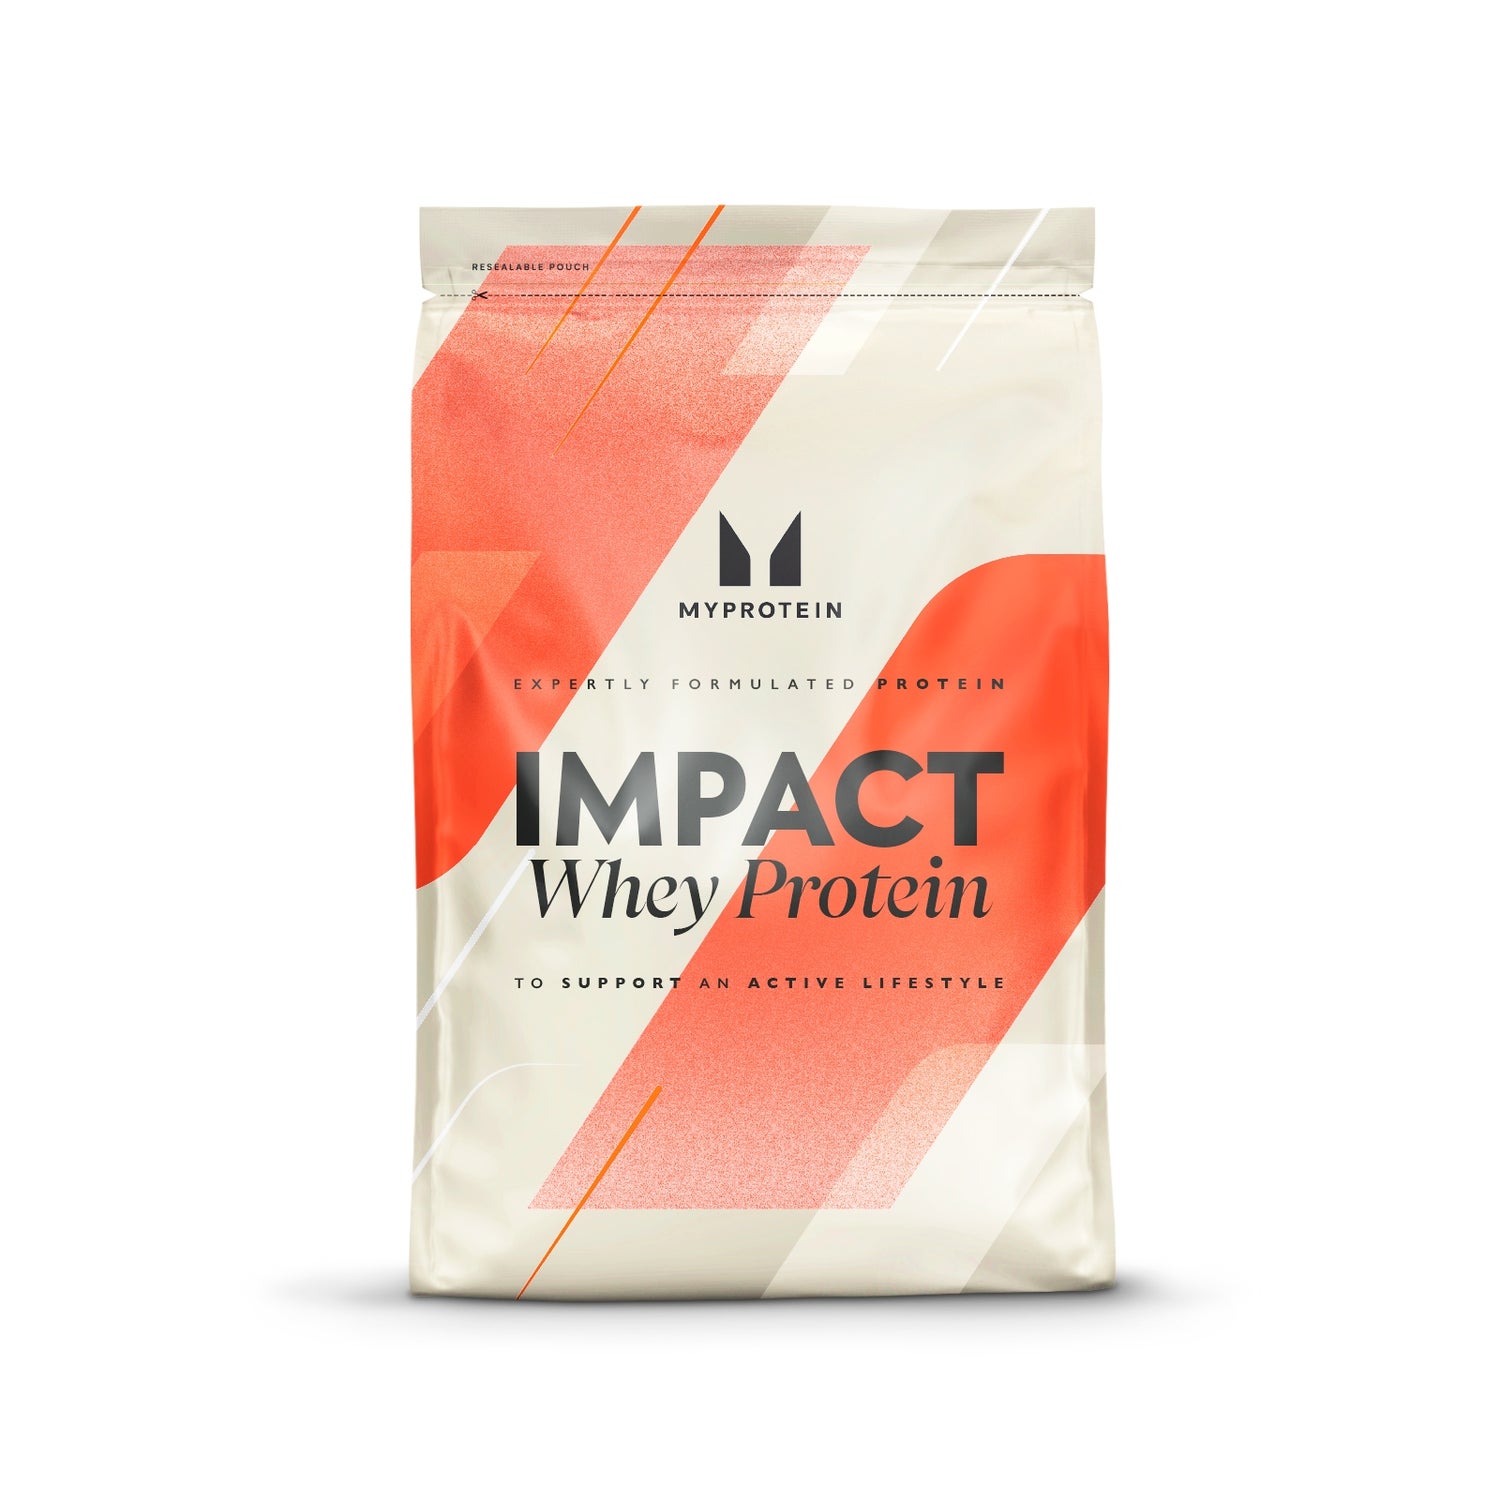 Impact Whey Protein - 2.5kg - Burro di arachidi al cioccolato